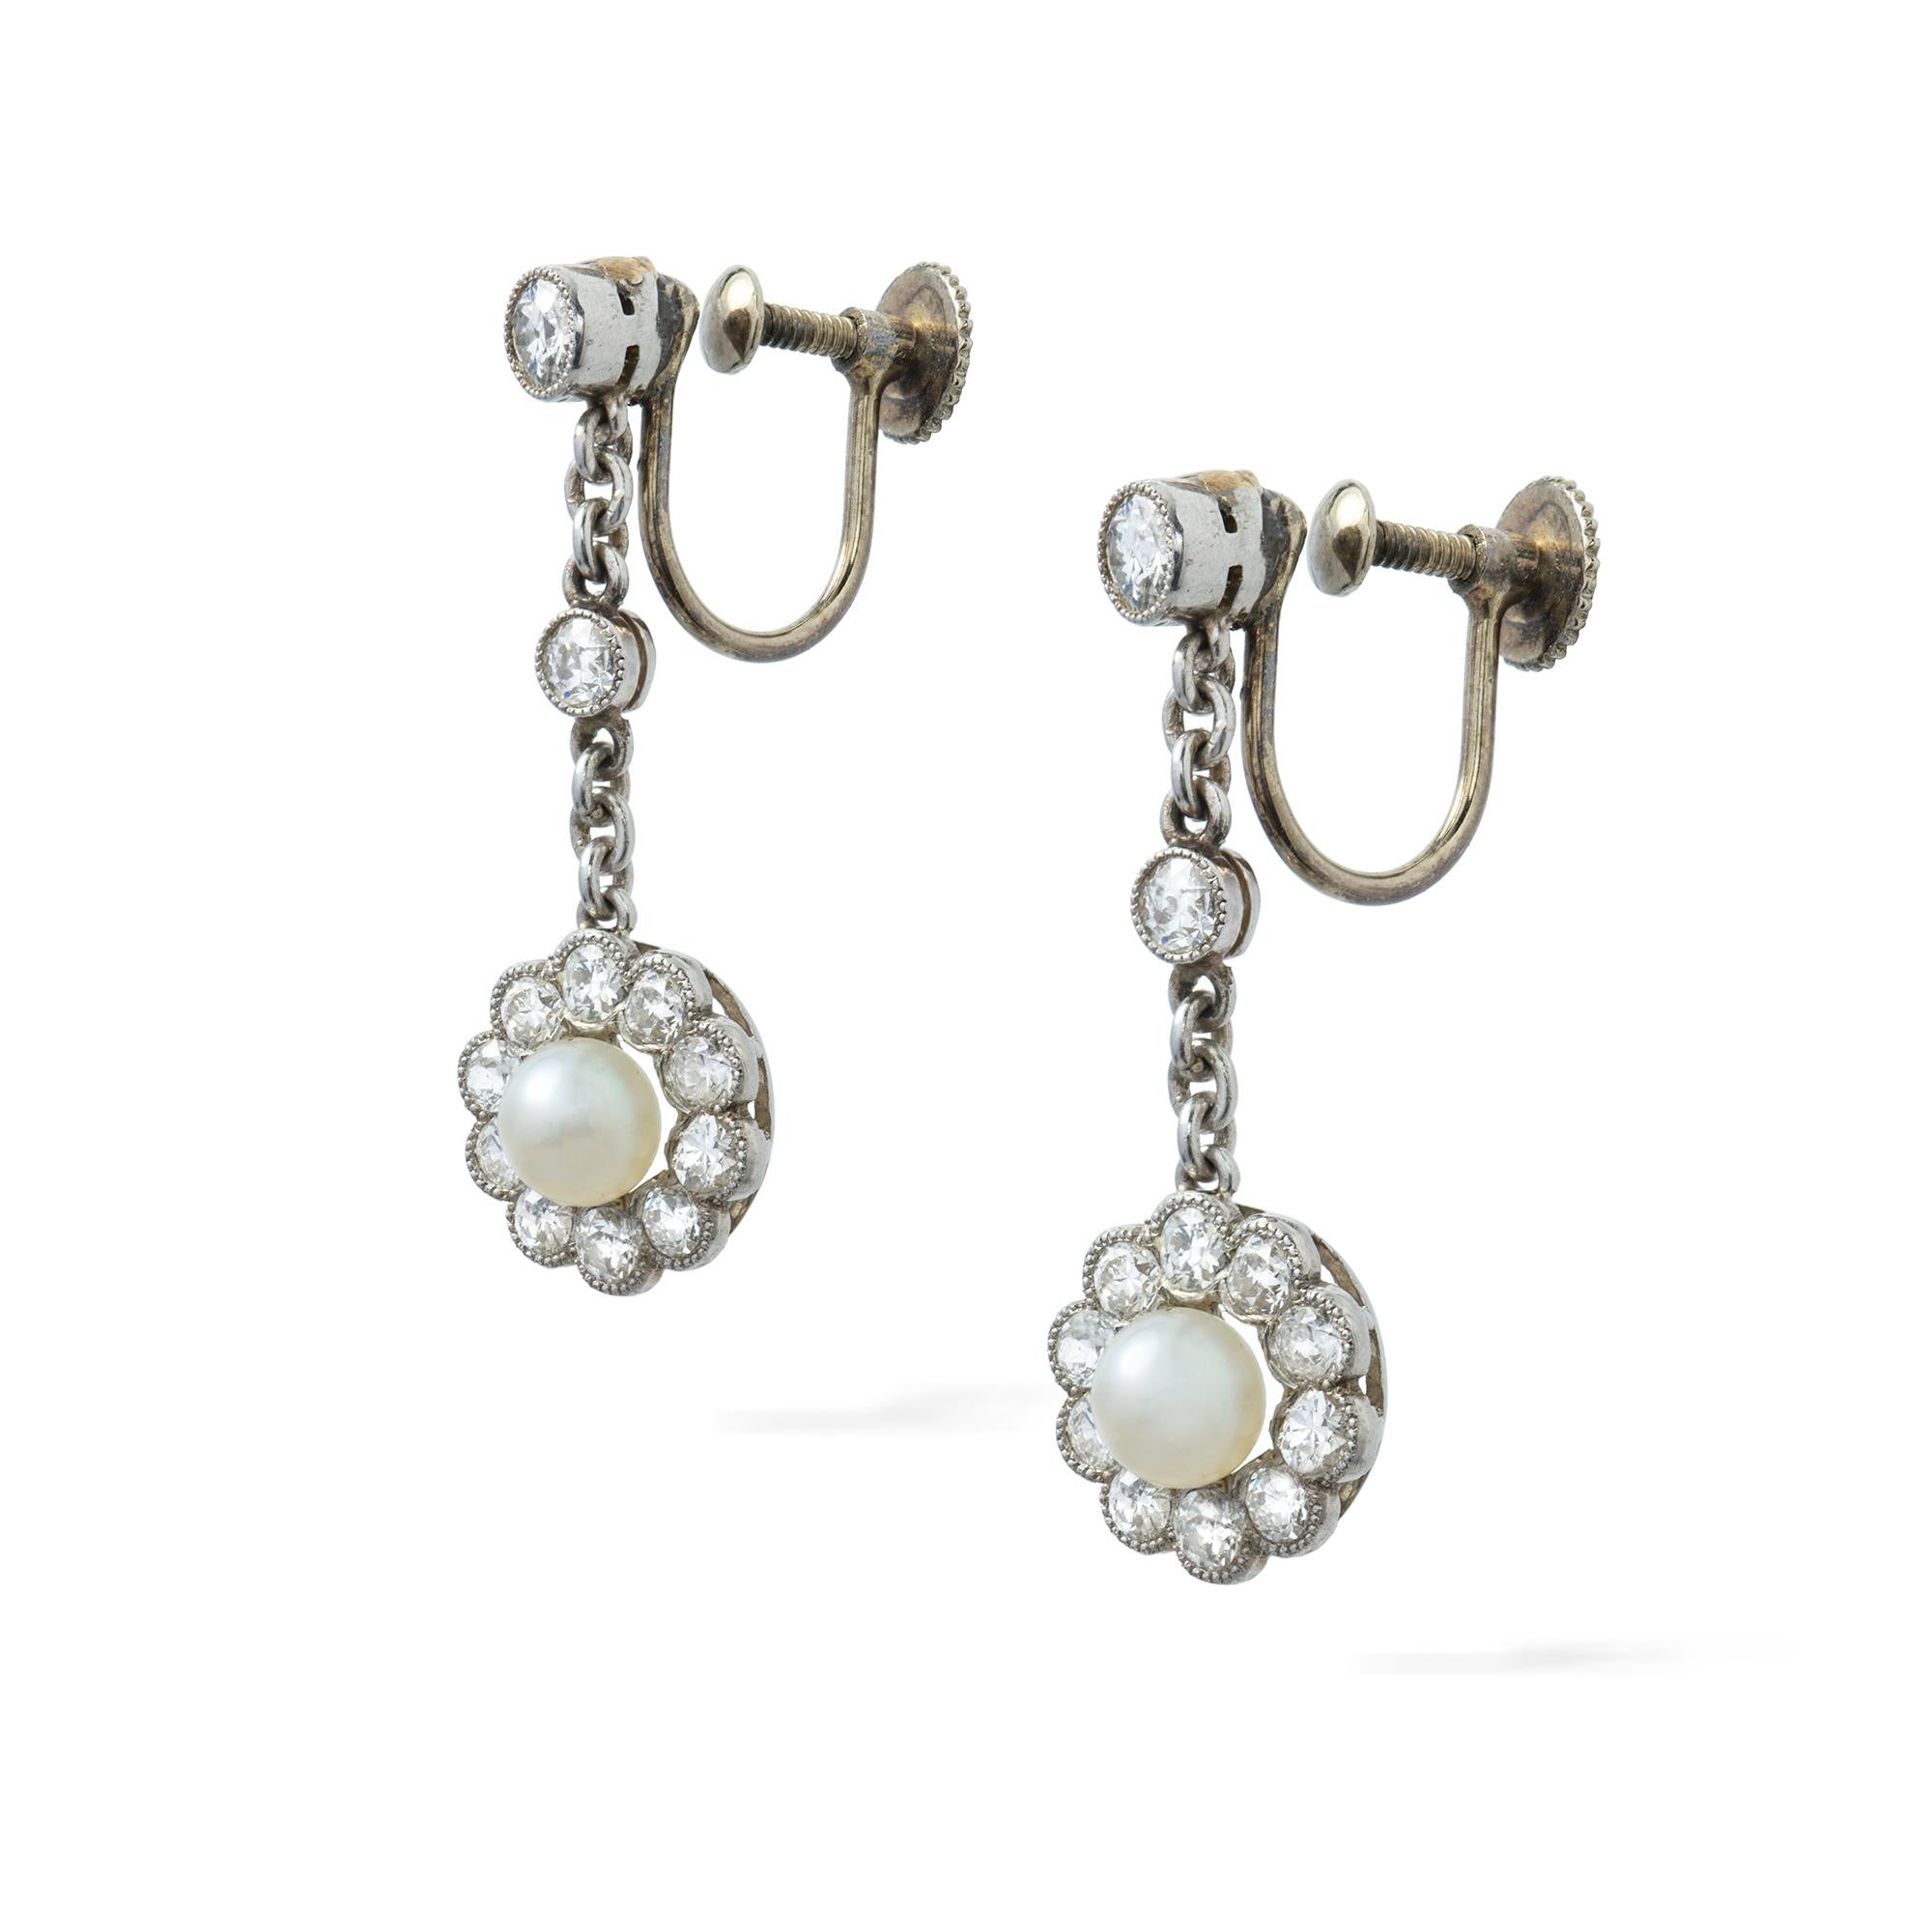 Ein edwardianisches Paar Perlen- und Diamantohrringe, jeder Ohrring bestehend aus einer Perle, begleitet von einem GCS-Bericht, der besagt, dass es sich um natürliches Salzwasser handelt, mit einer Größe von ca. 4,5 mm, umgeben von zehn Diamanten im